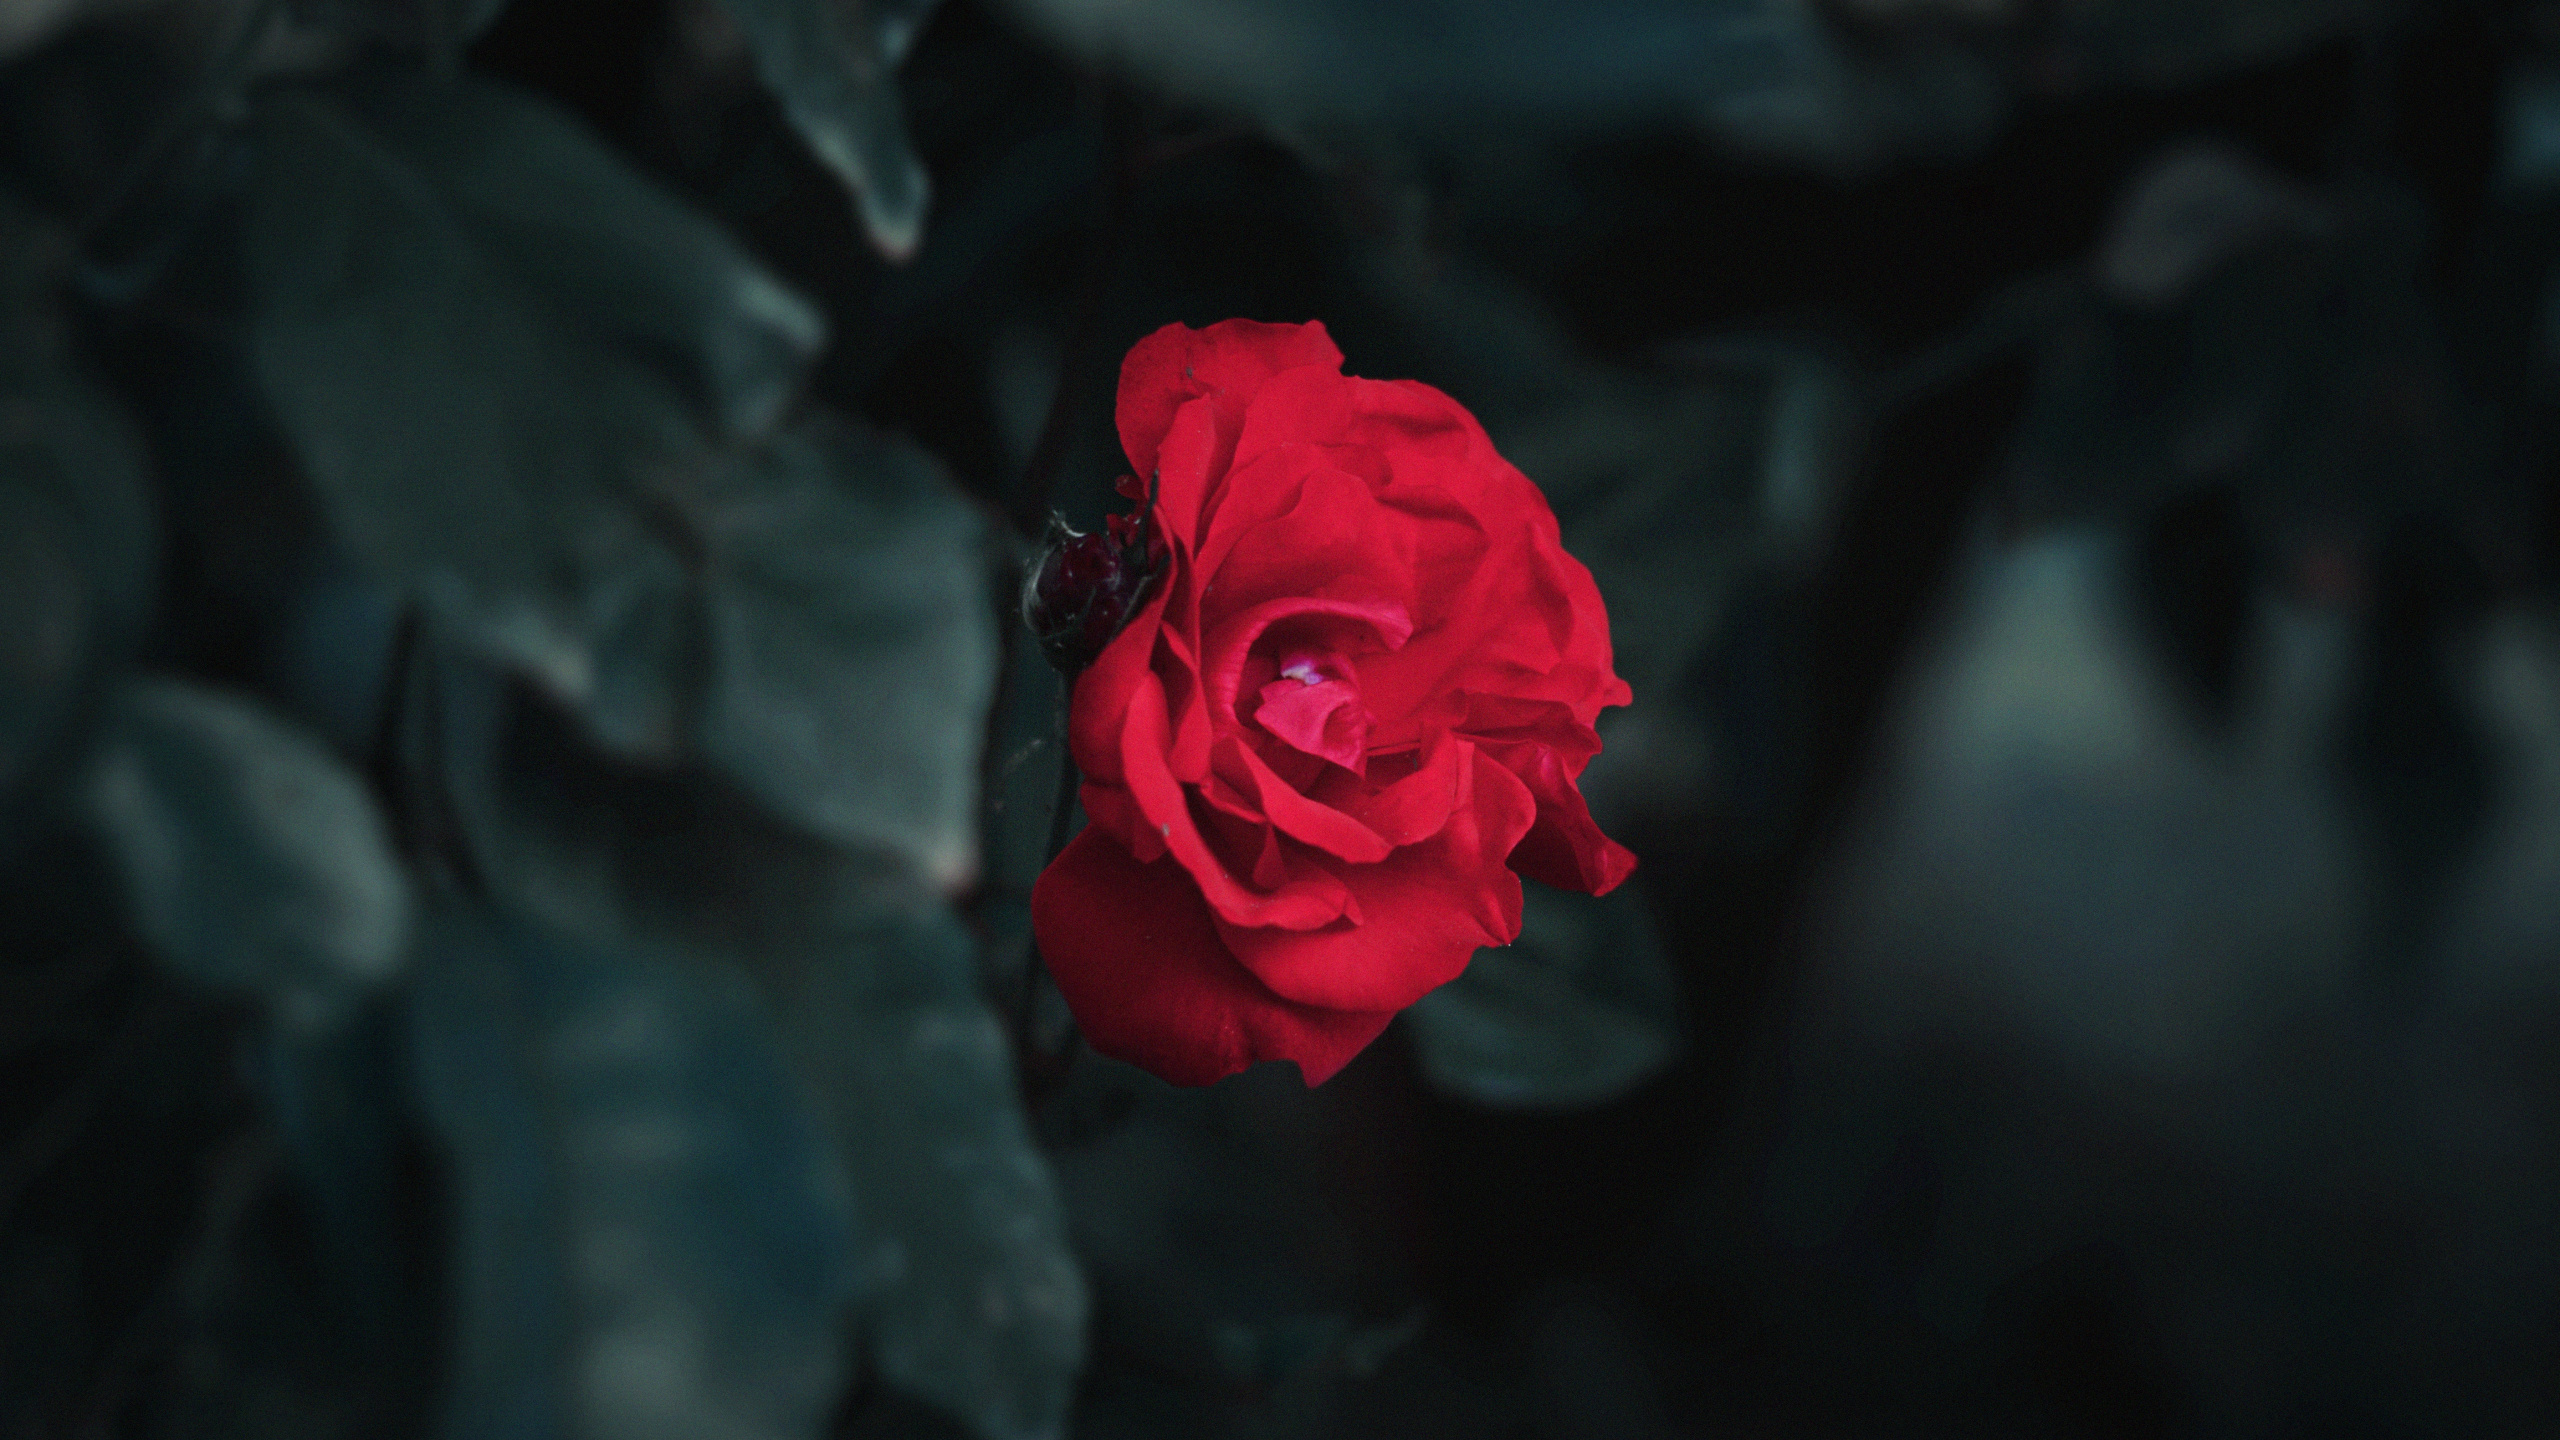 Rosa Roja en Fotografía de Cerca. Wallpaper in 2560x1440 Resolution